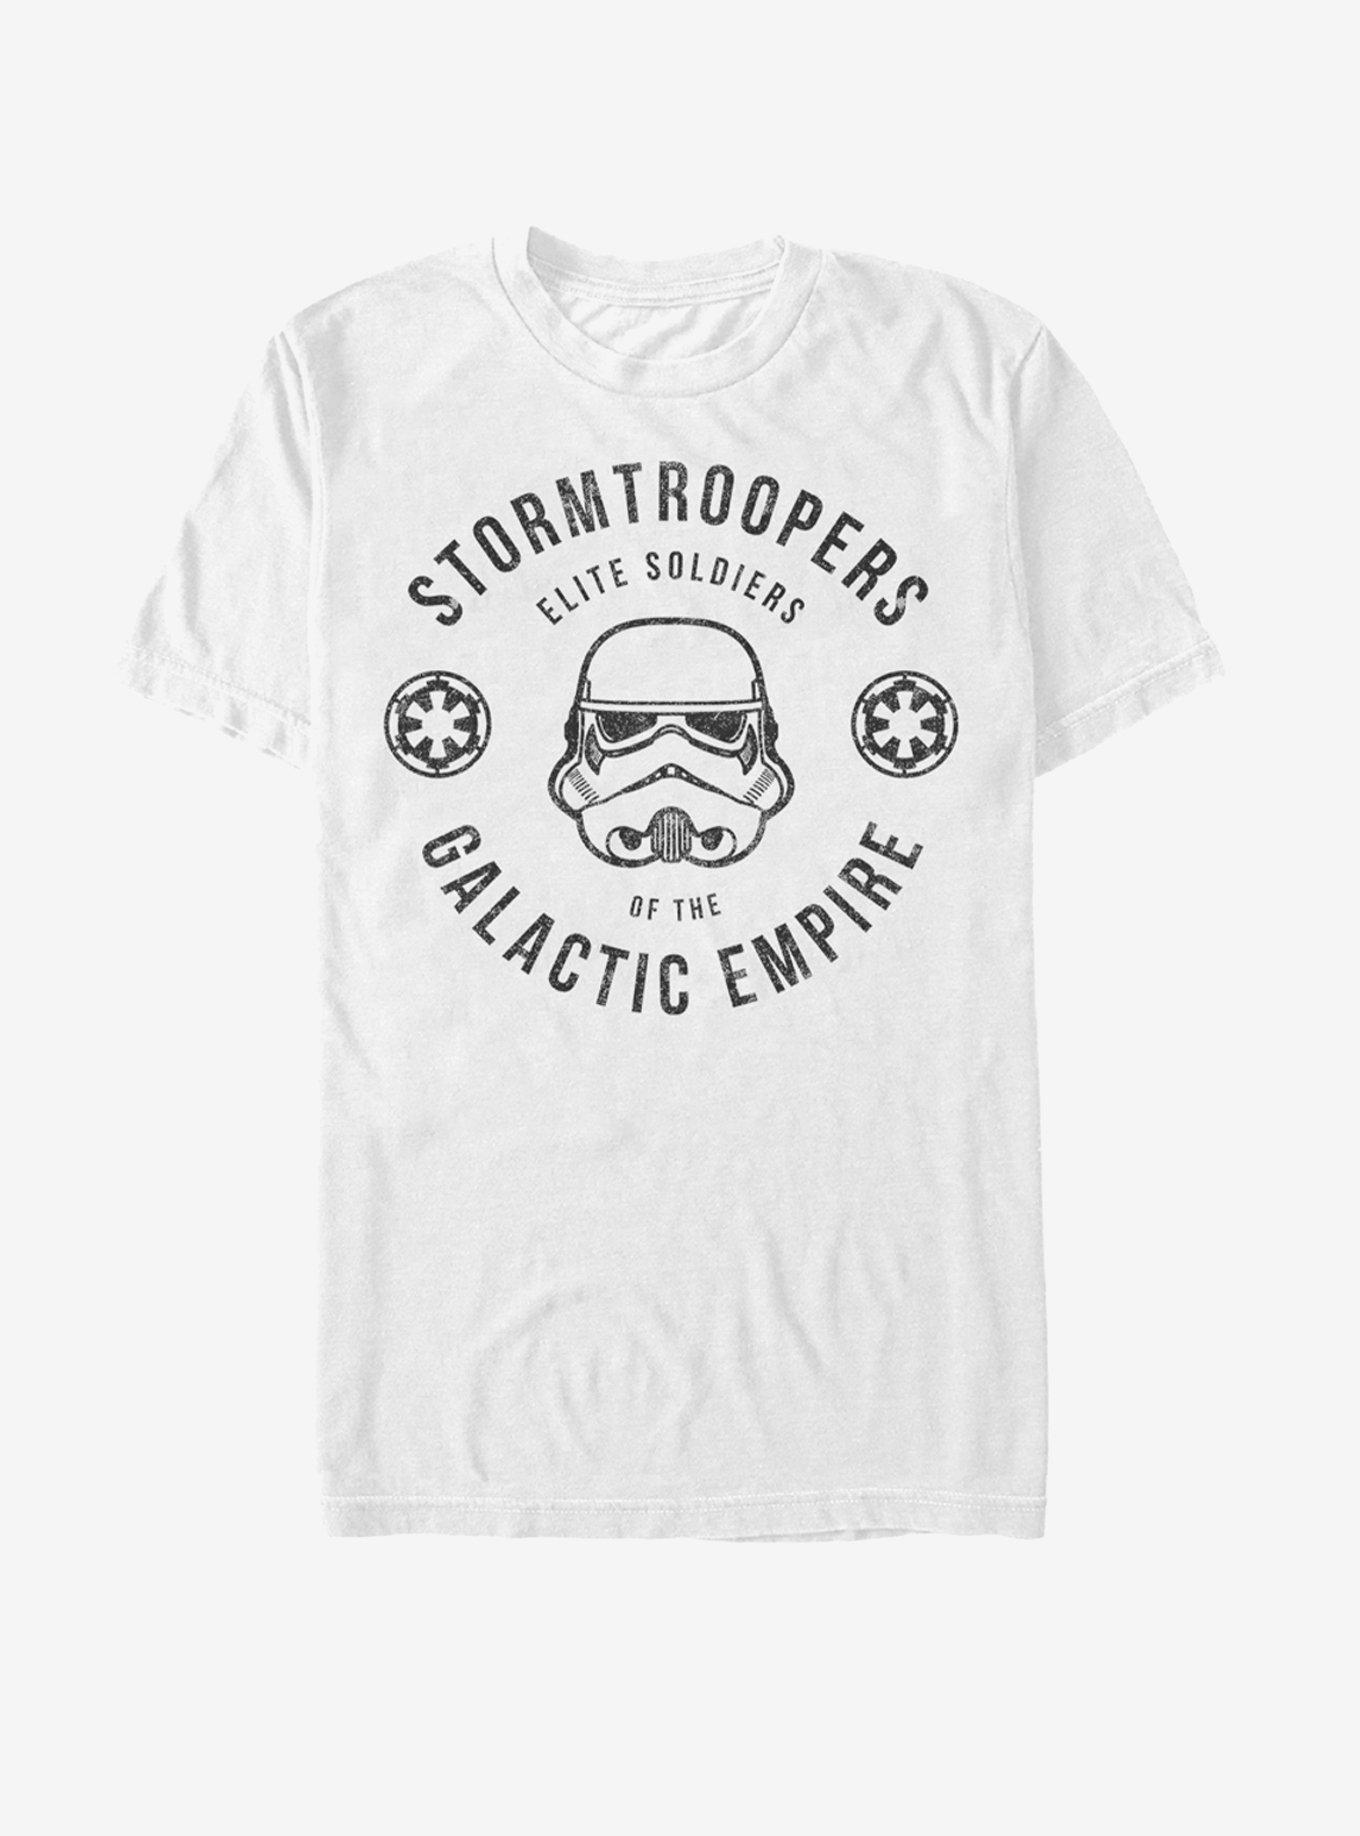 Star Wars Stormtrooper Elite Soldier Uniform T-Shirt